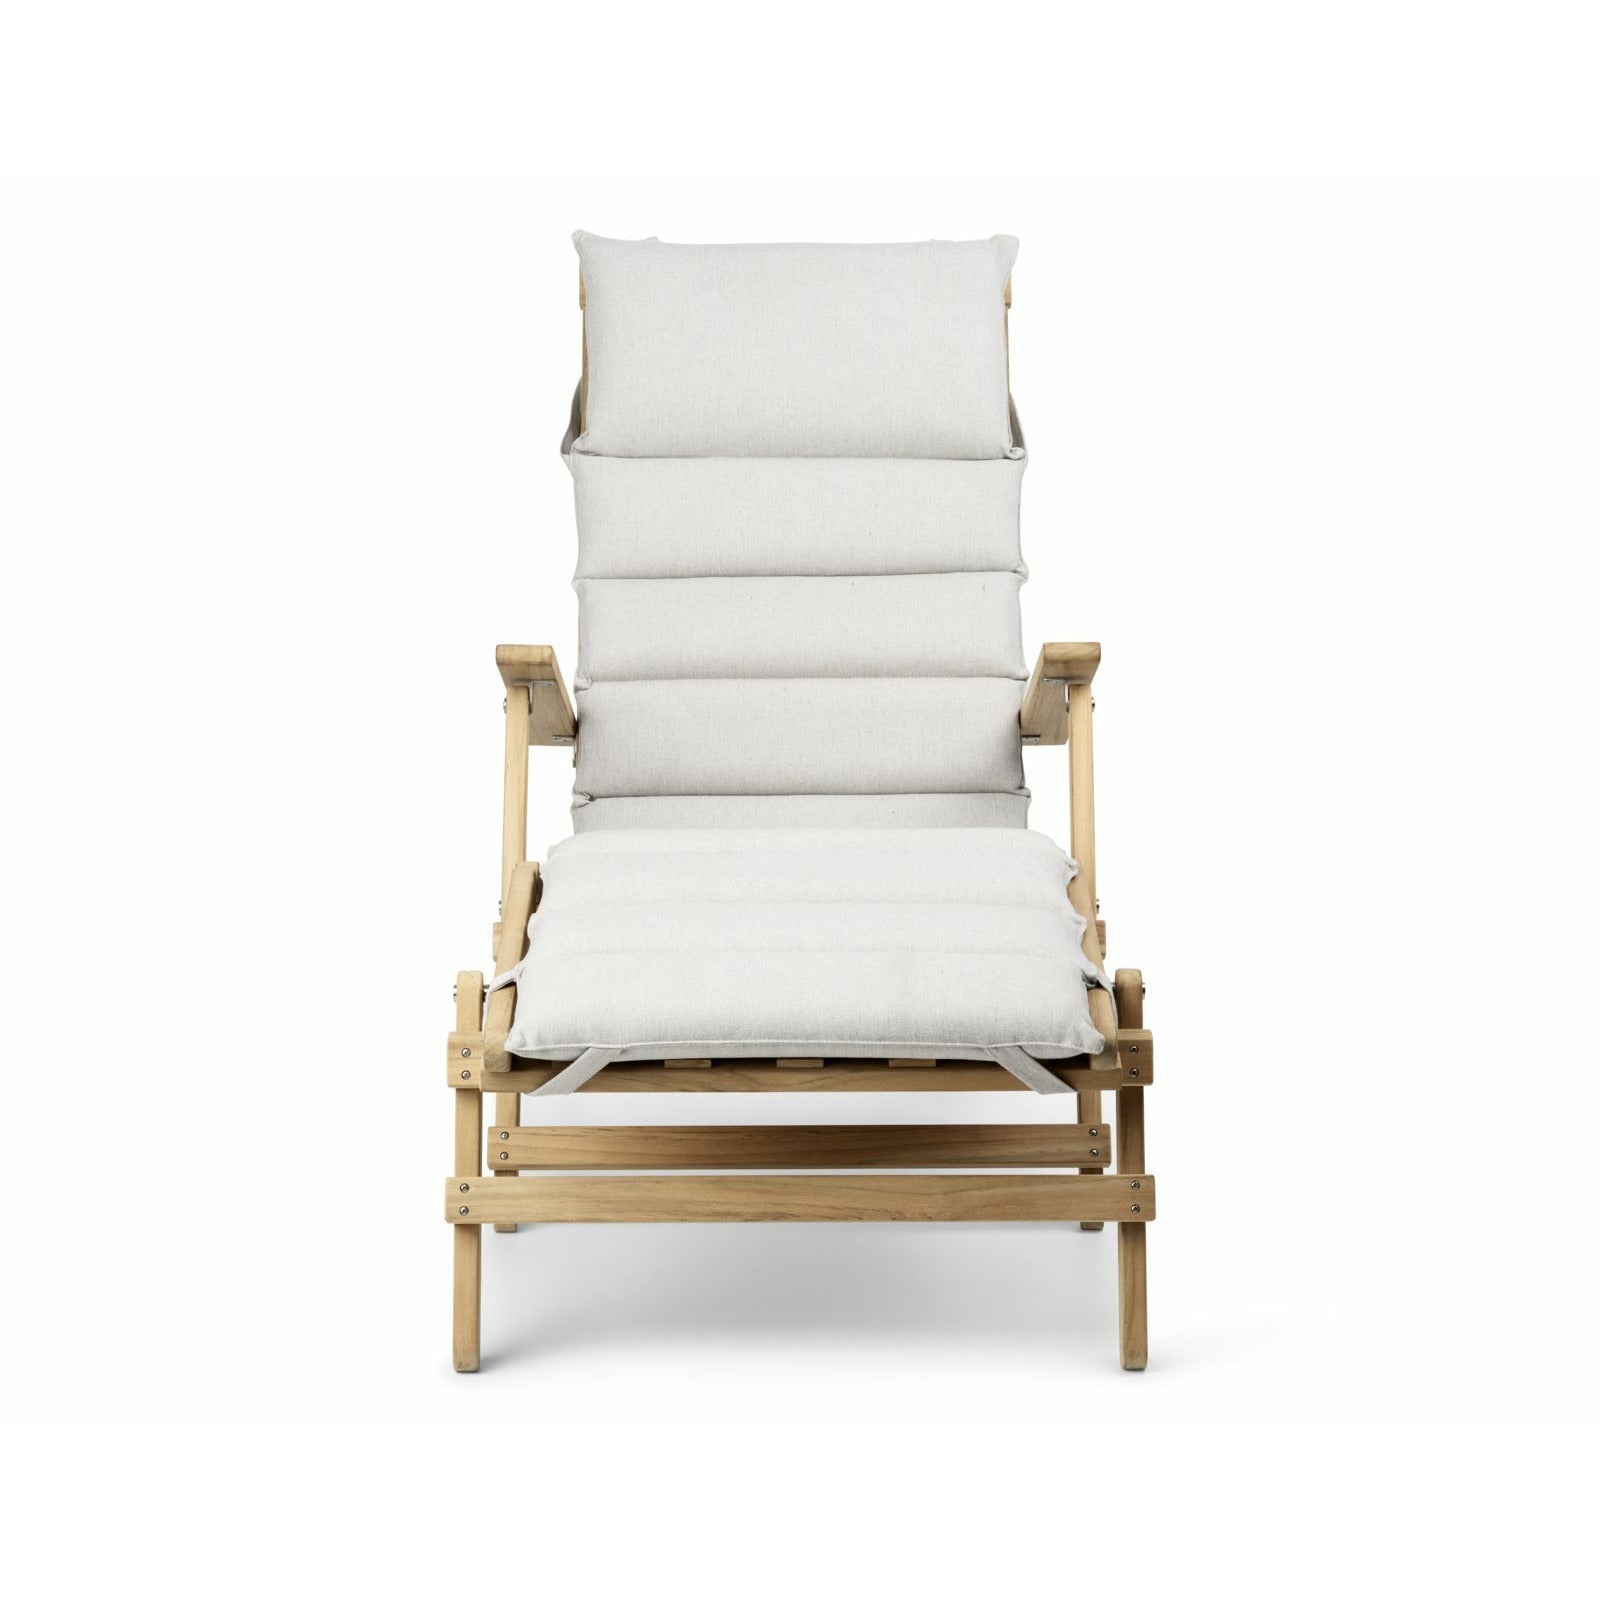 Carl Hansen Cushion For Bm5565 Extended Deck Chair